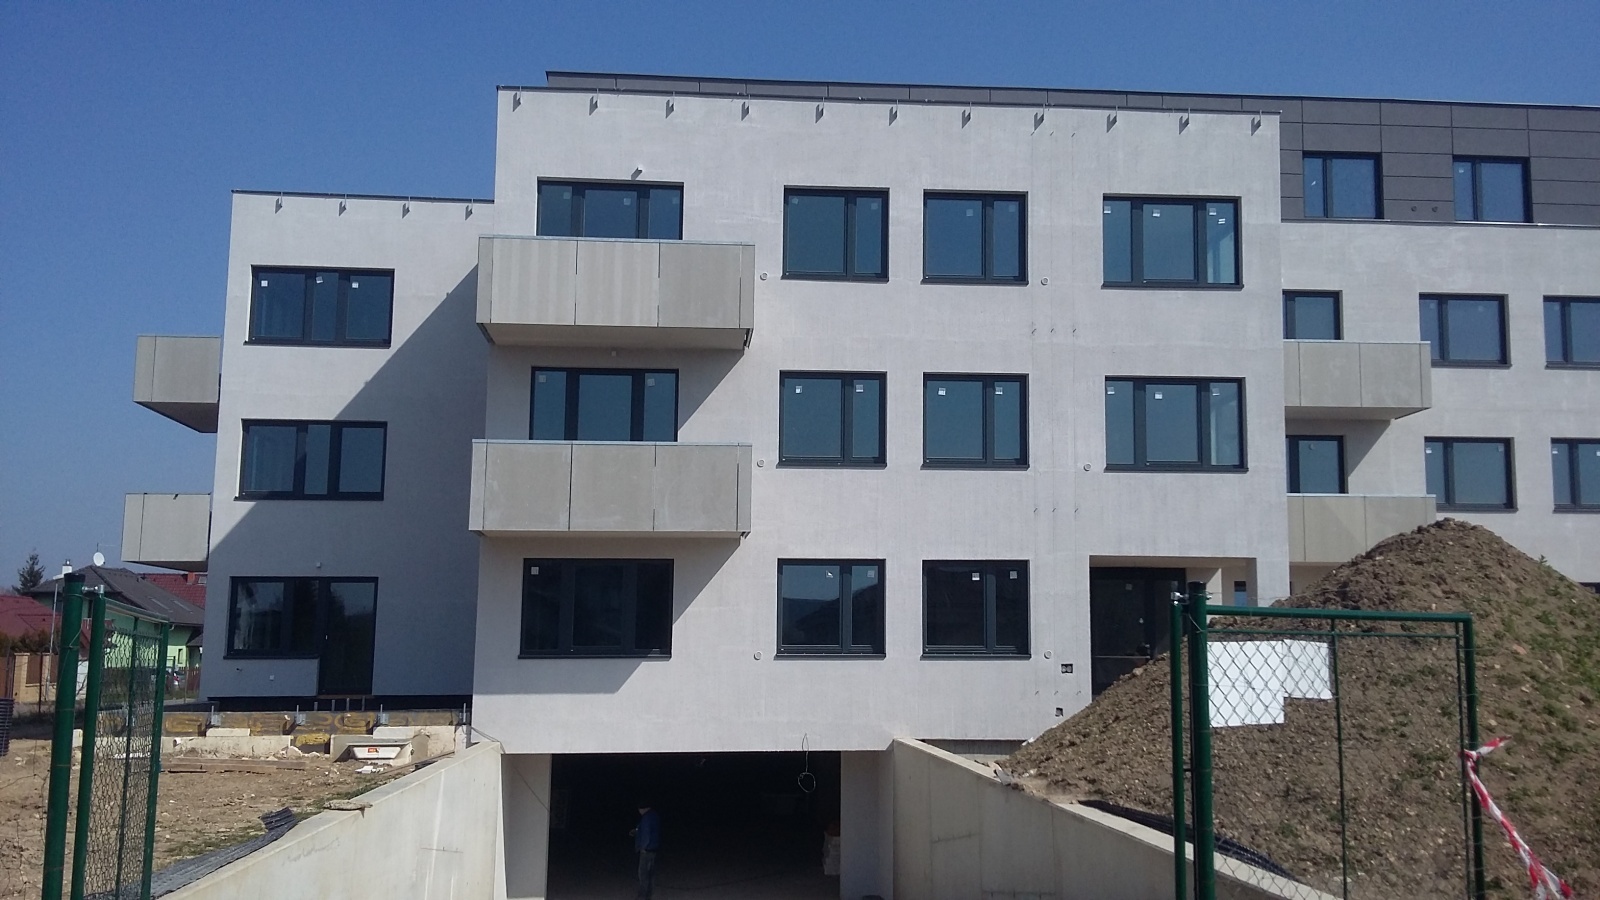 Komerční prostor, 83.3 m2, Horoměřice, Projekt Višnovka - bytové domy